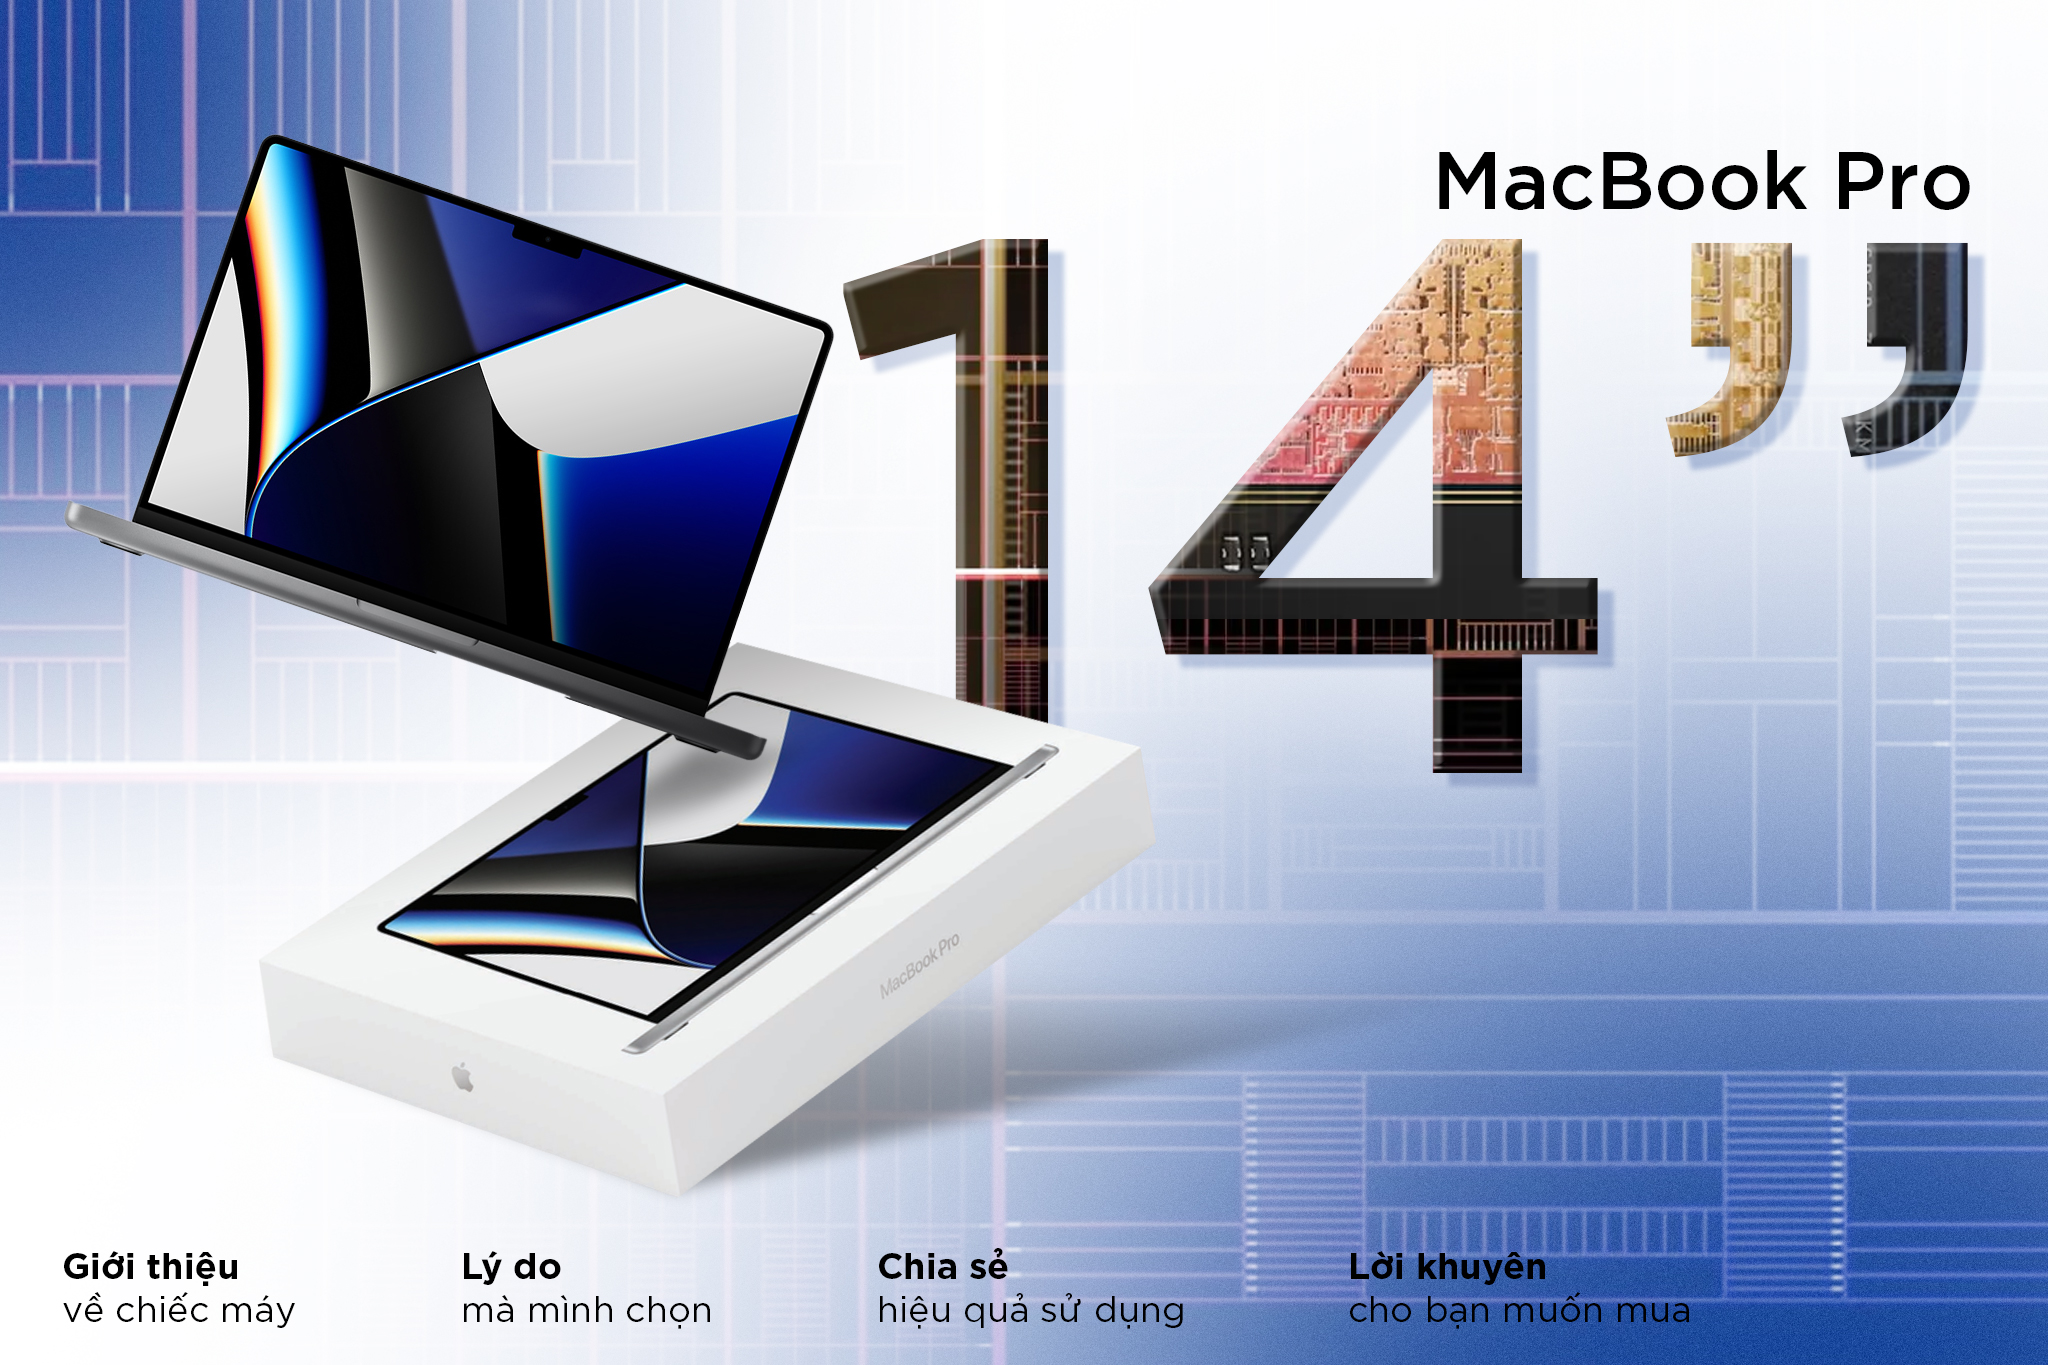 Lý do mua MacBook Pro 14": Phục vụ công việc đa nhiệm, cấu hình đáng mong đợi